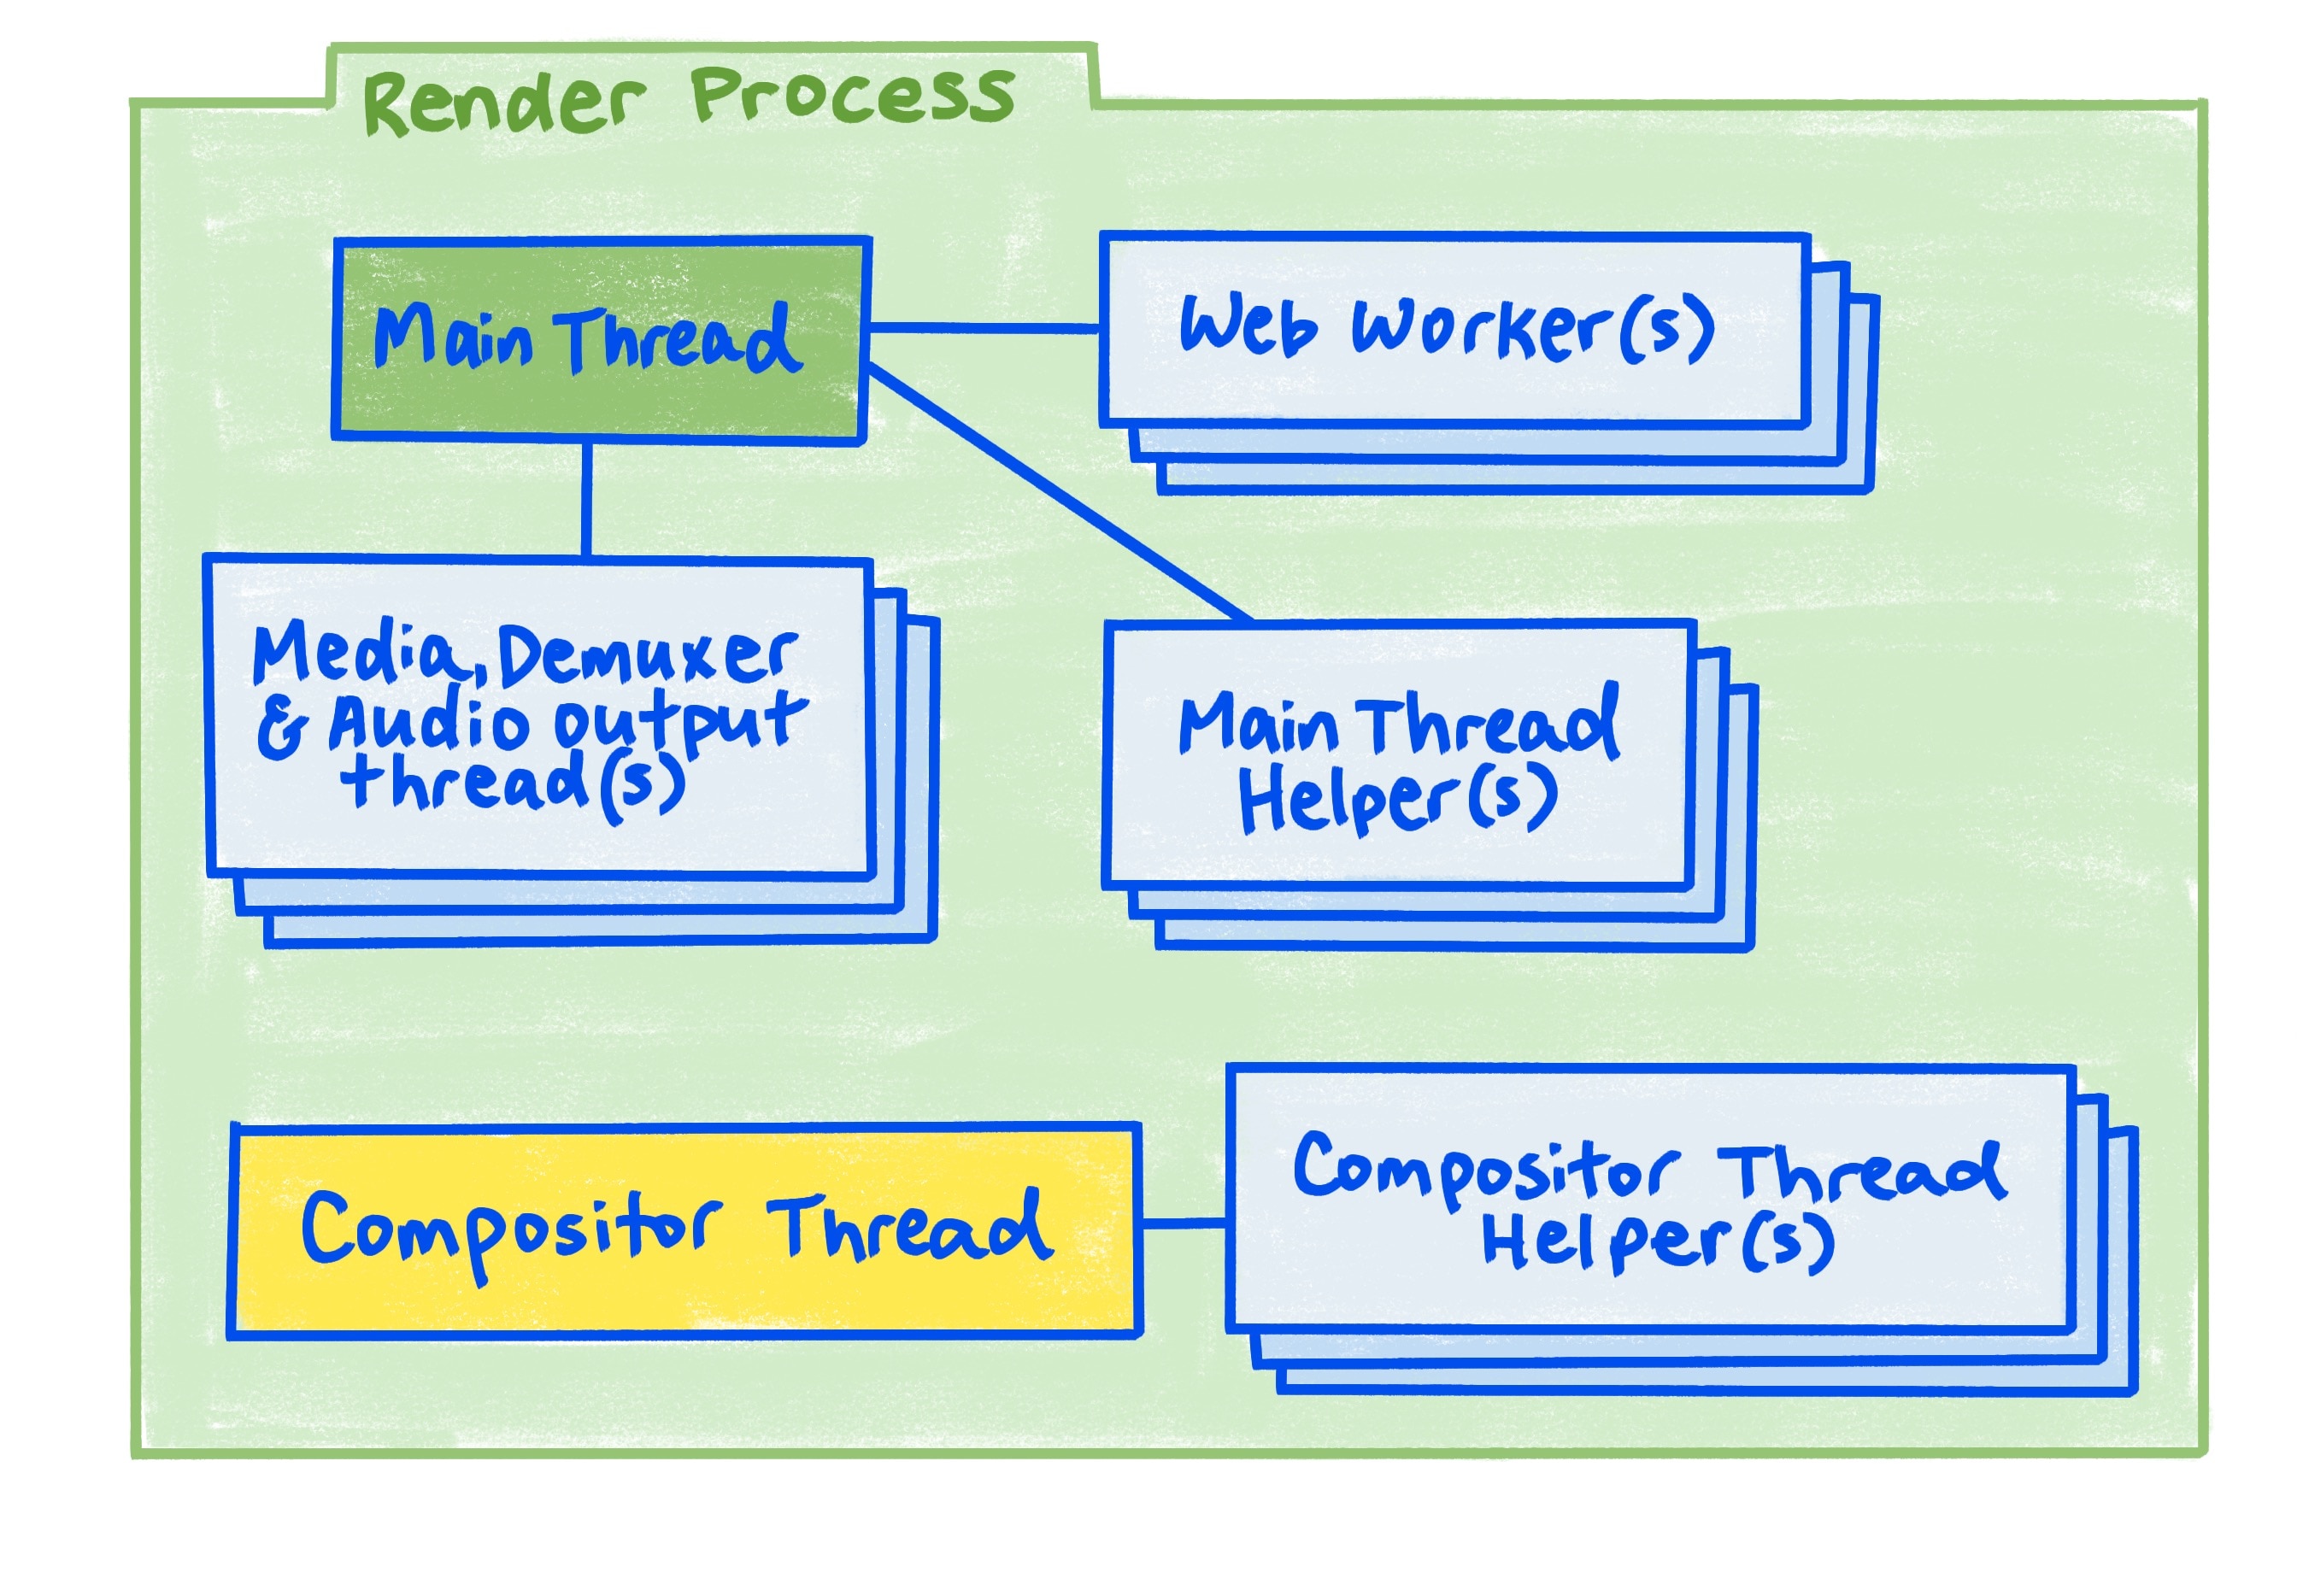 Diagram procesu renderowania zgodnie z opisem w artykule.